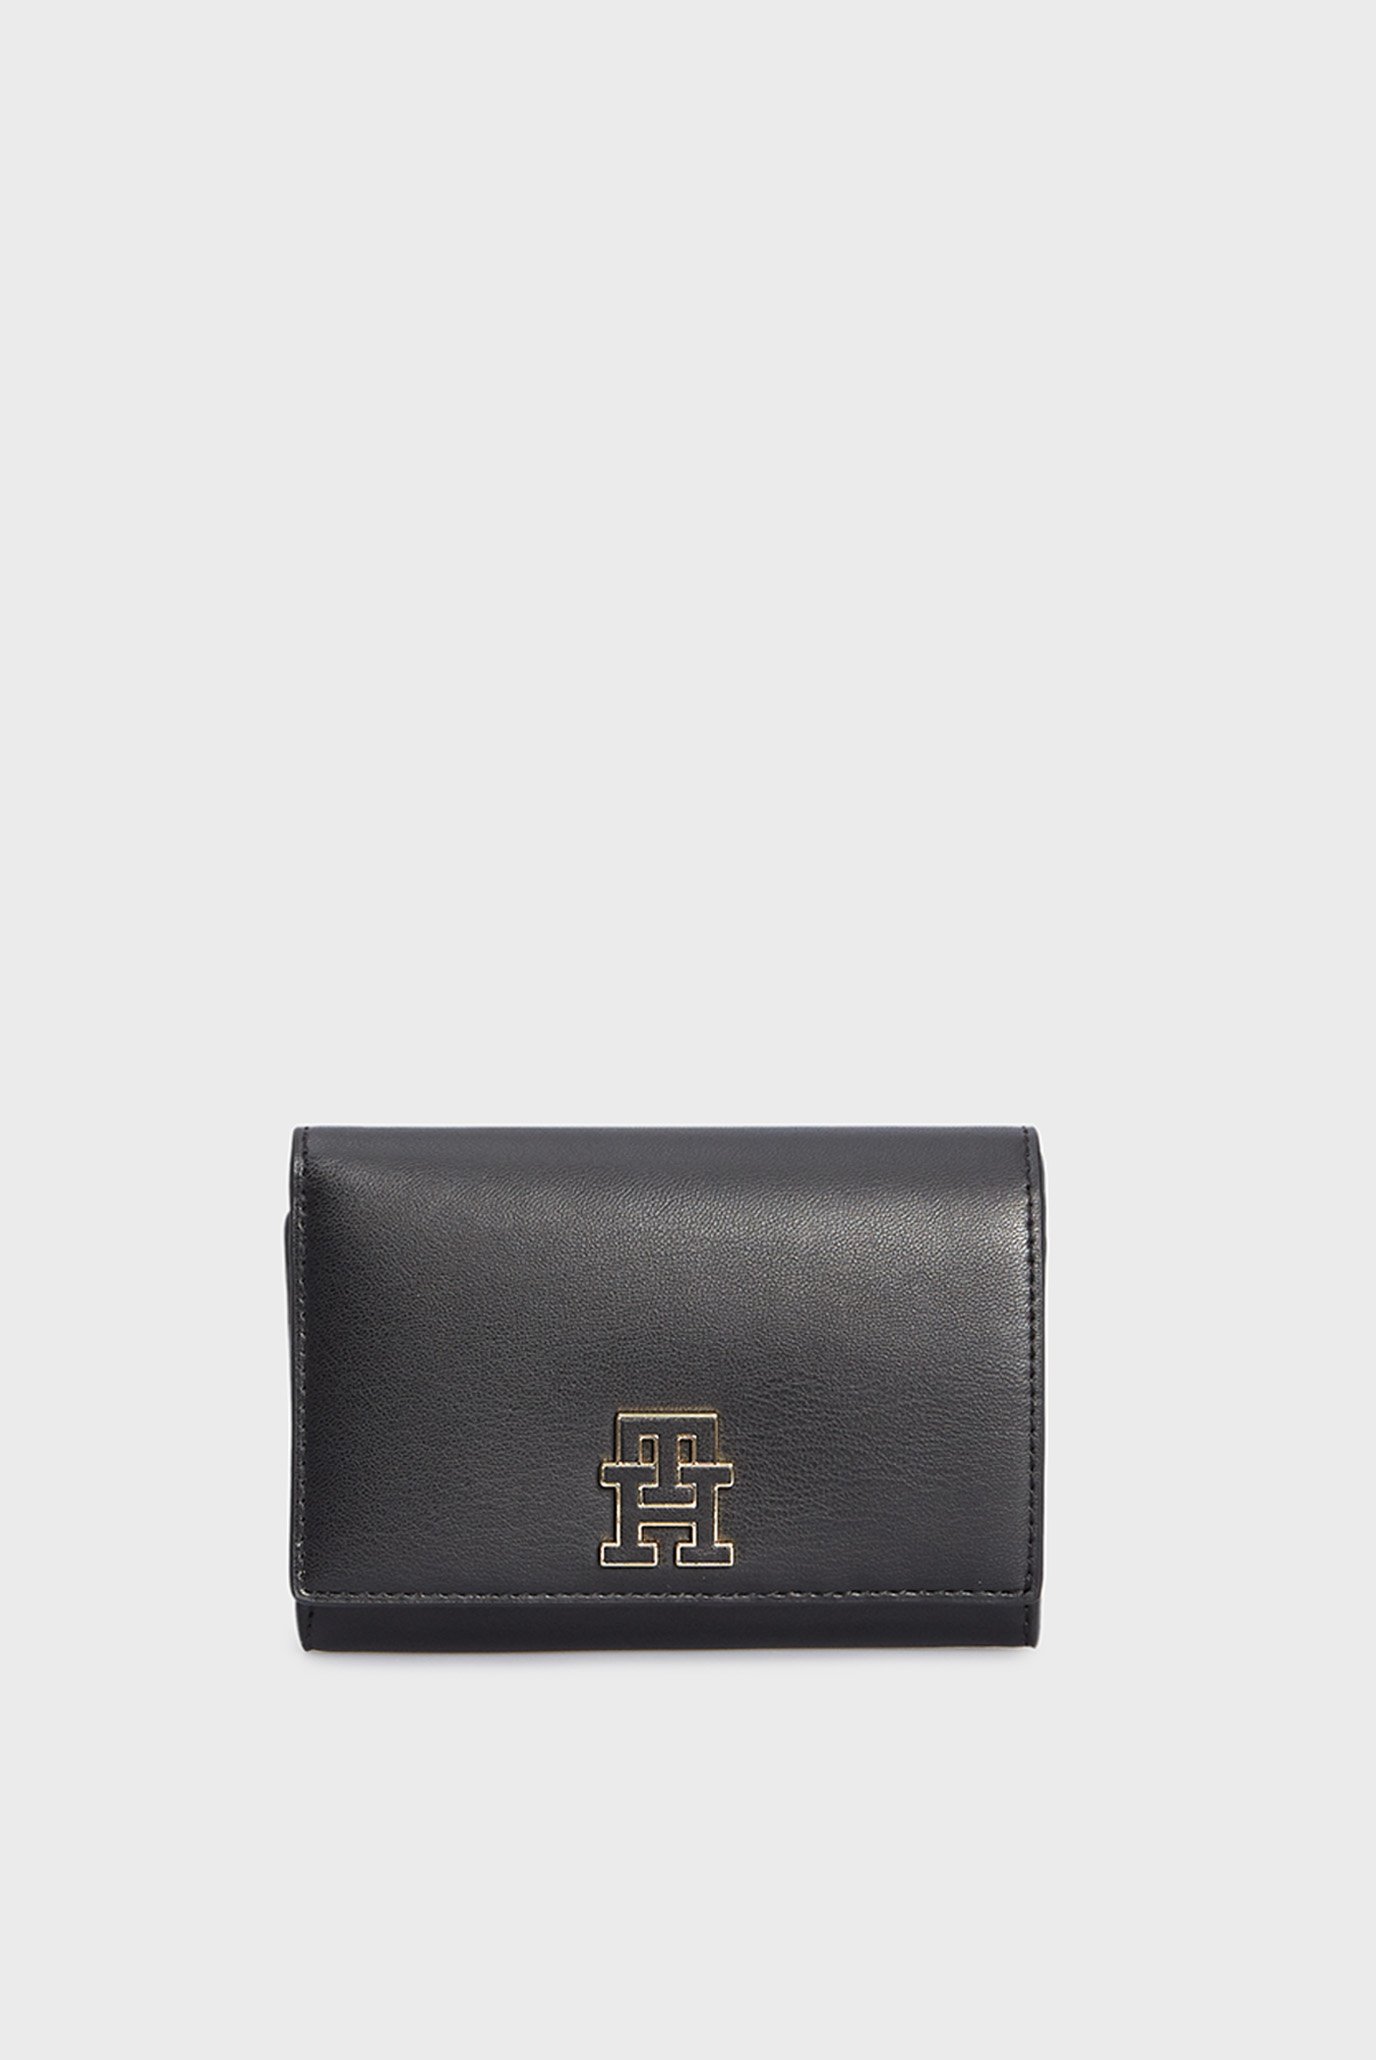 Жіночий чорний гаманець TH CHIC MED FLAP 1